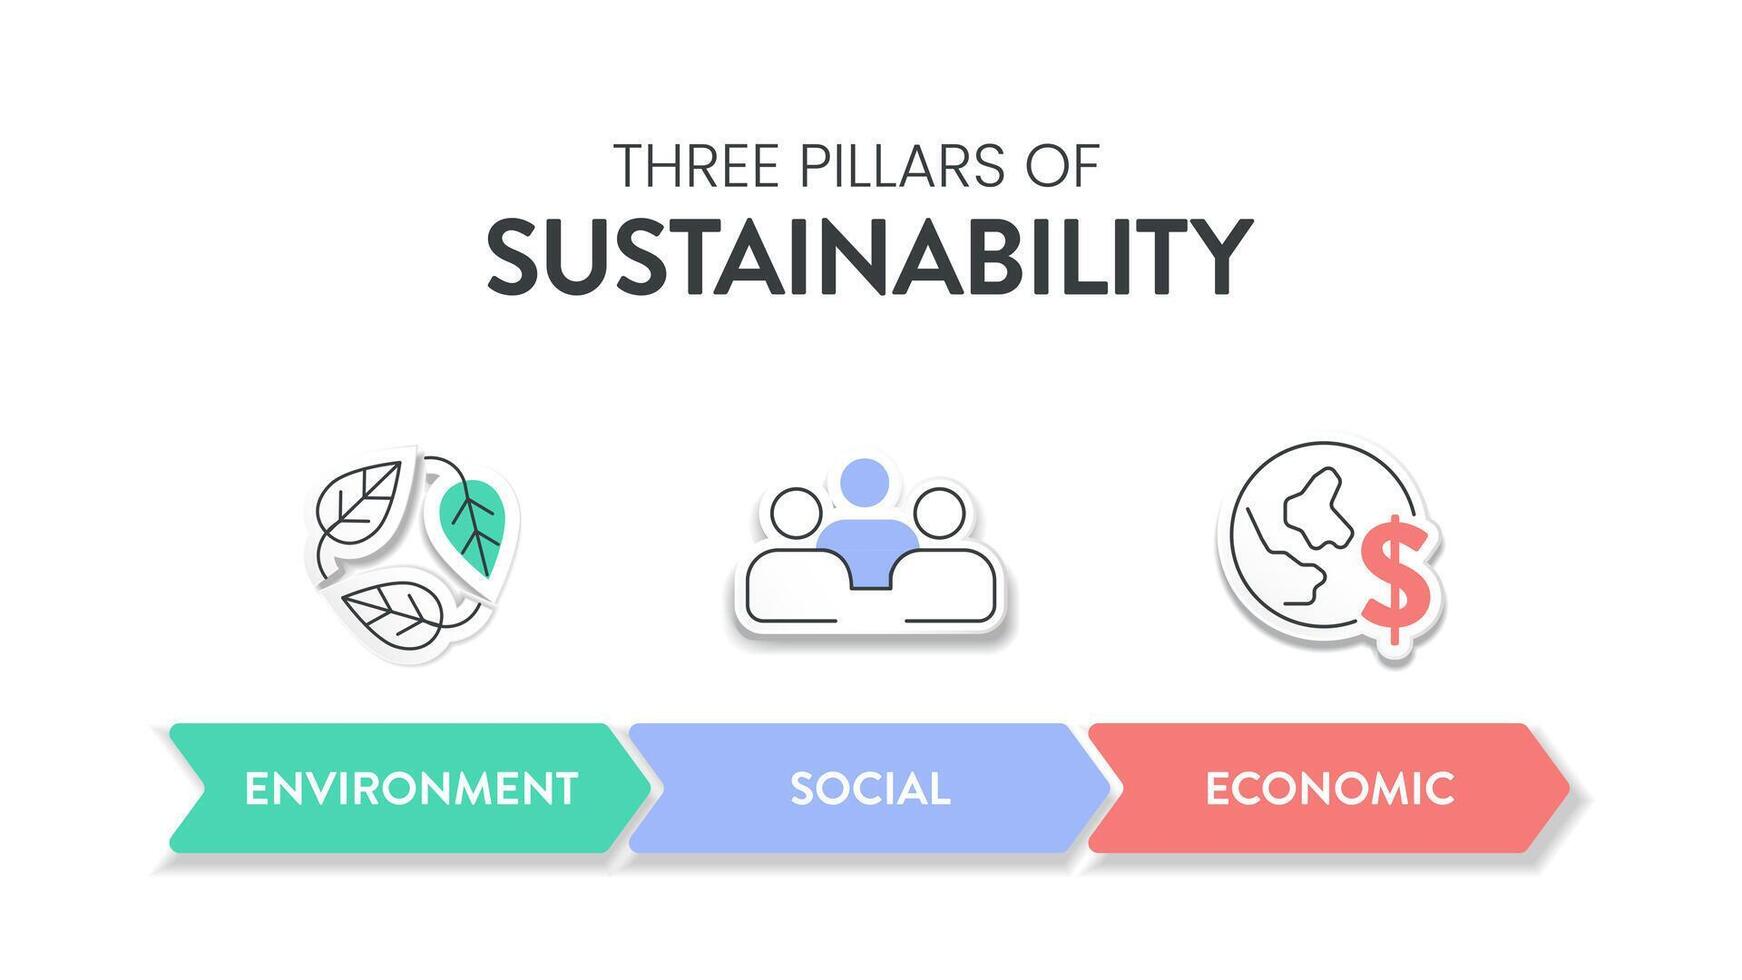 Tres pilares de sostenible desarrollo marco de referencia diagrama gráfico infografía bandera con icono vector tiene ecológico, económico y social. ambiental, económico y social sustentabilidad conceptos.